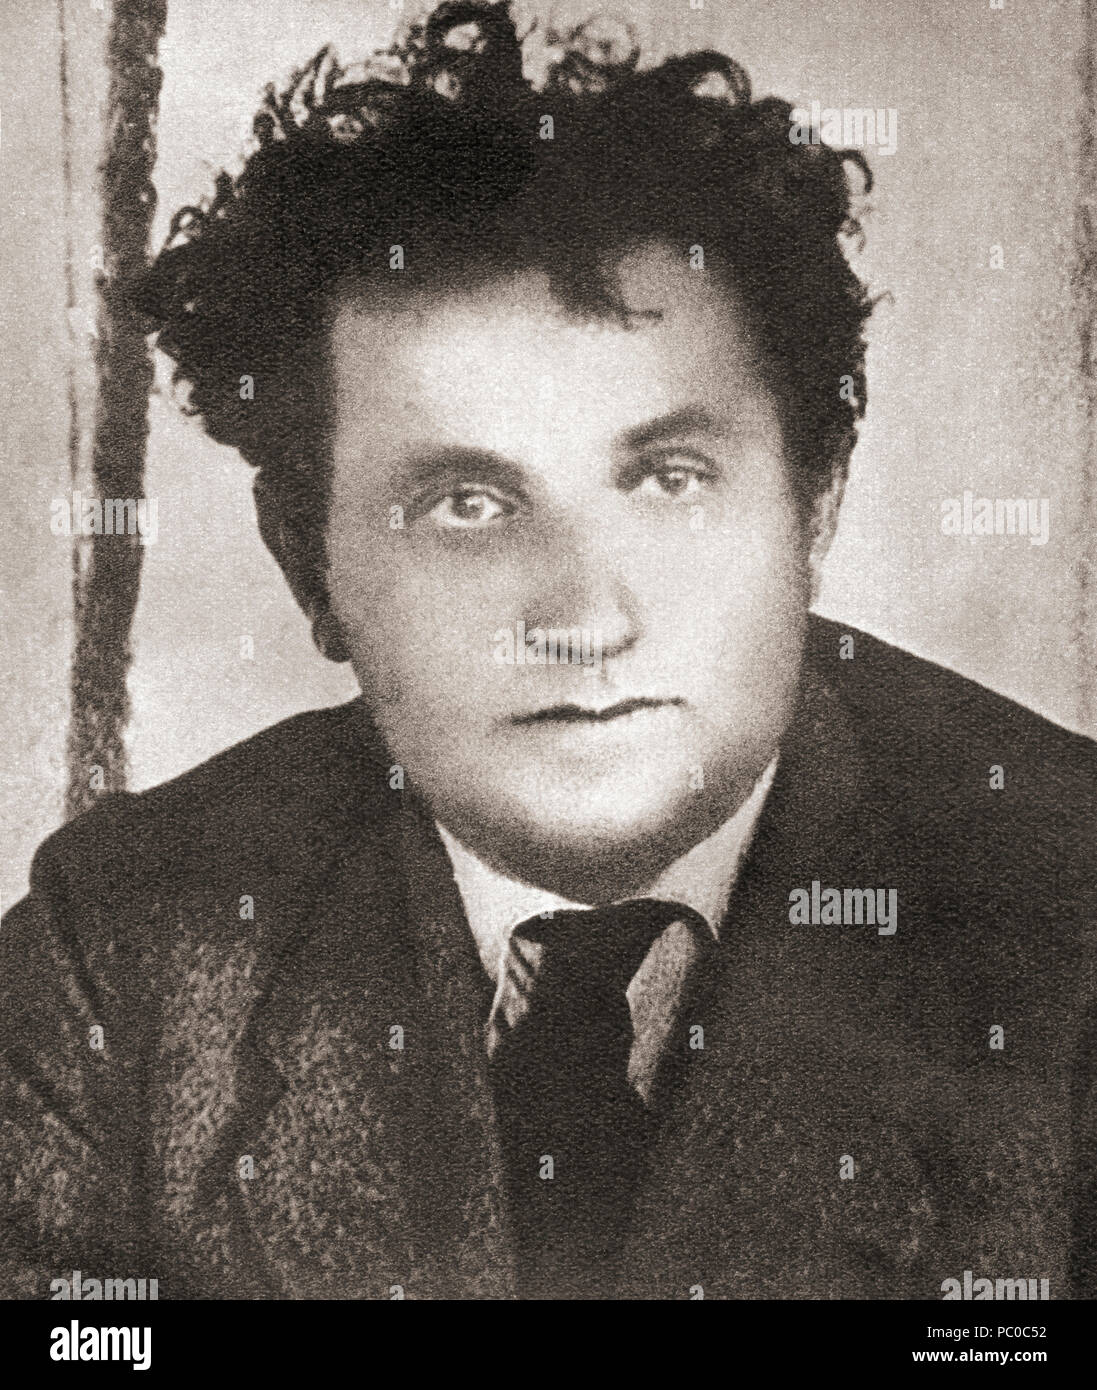 Yevseevich Grigori Zinoviev, 1883 - 1936, né Hirsch Apfelbaum, aka Ovsei-Gershon Radomyslsky Aronovich. Révolutionnaire bolchevik et un politicien communiste soviétique. À partir de ces années, publié en 1938. Banque D'Images